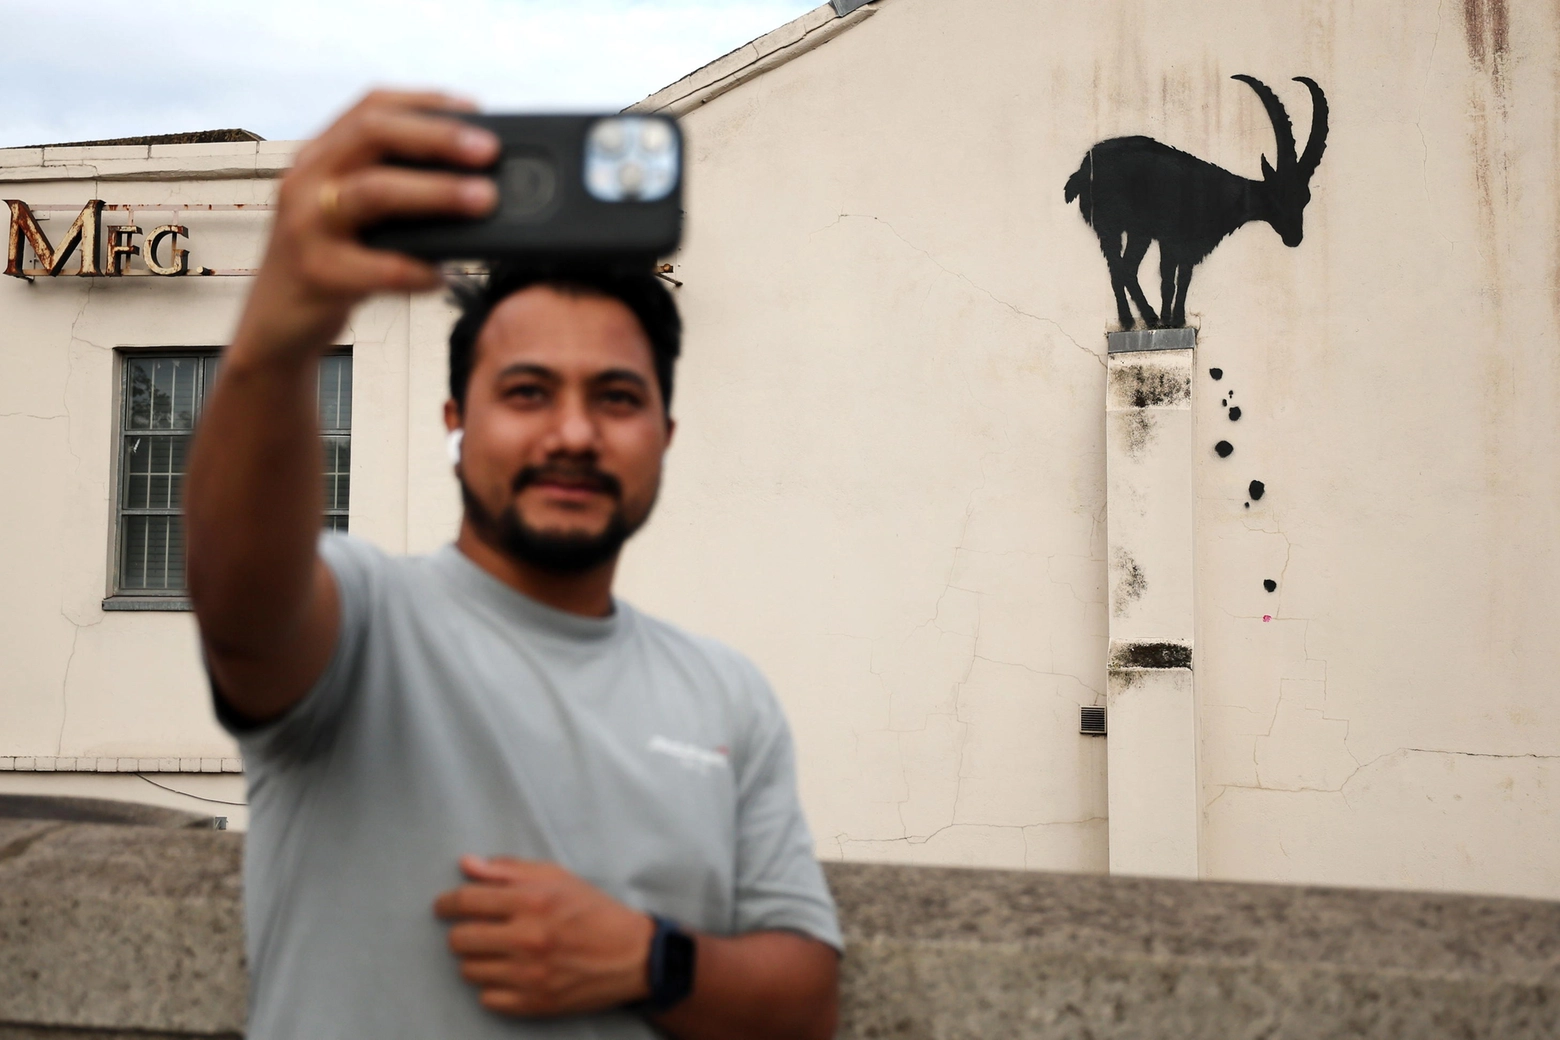 La capra sul muro: nuovo murale di Banksy scoperto oggi a Londra